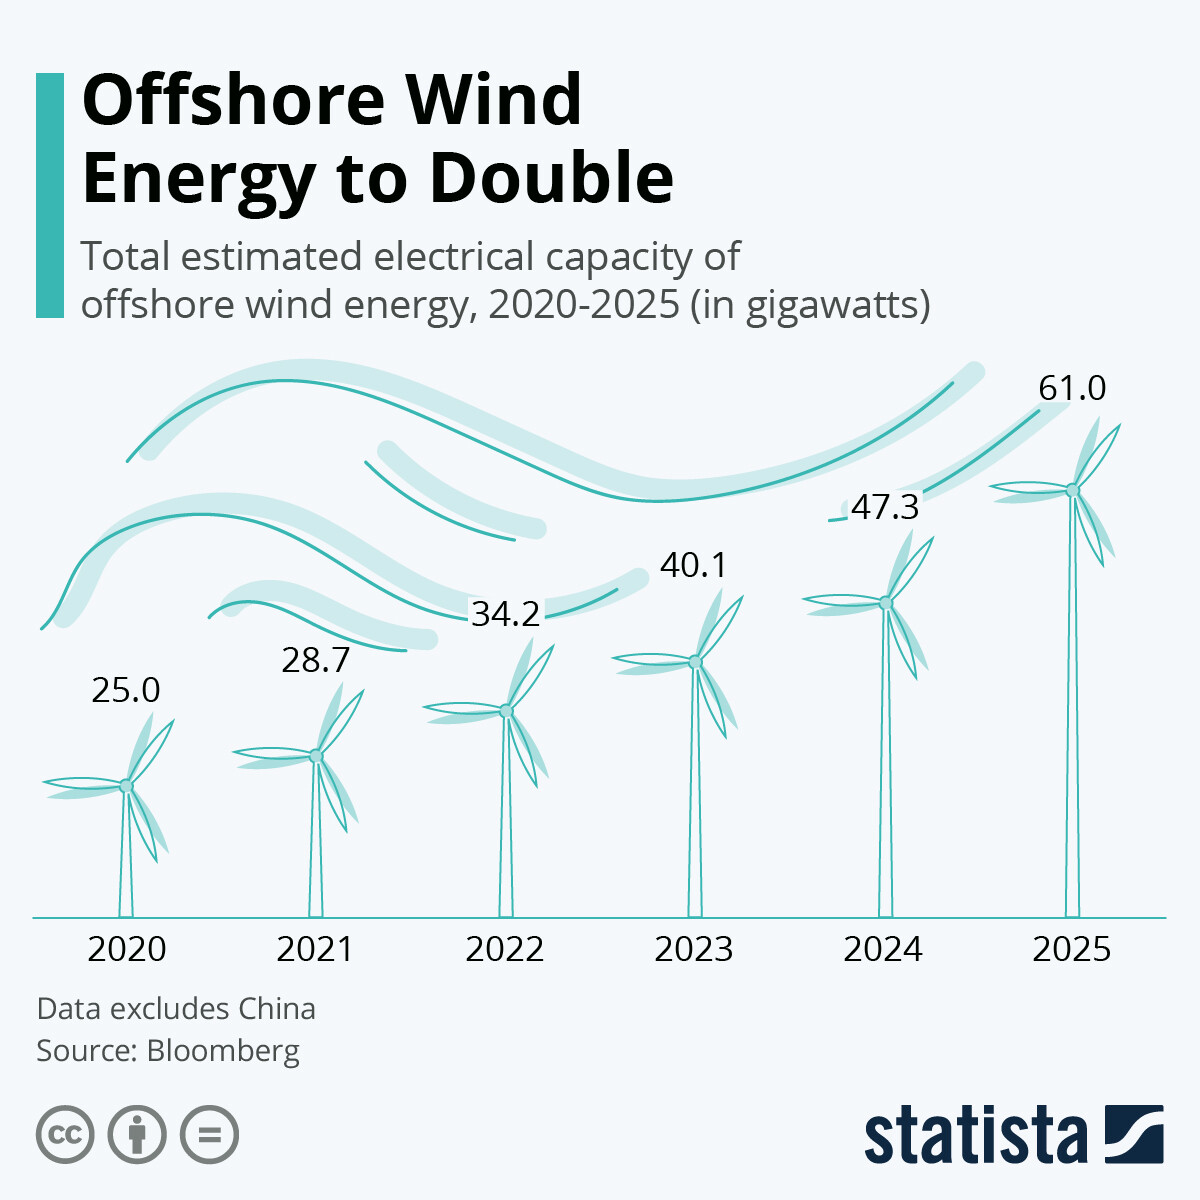 インフォグラフィック: 2025 年までに洋上風力エネルギーを倍増 | スタティスタ」 